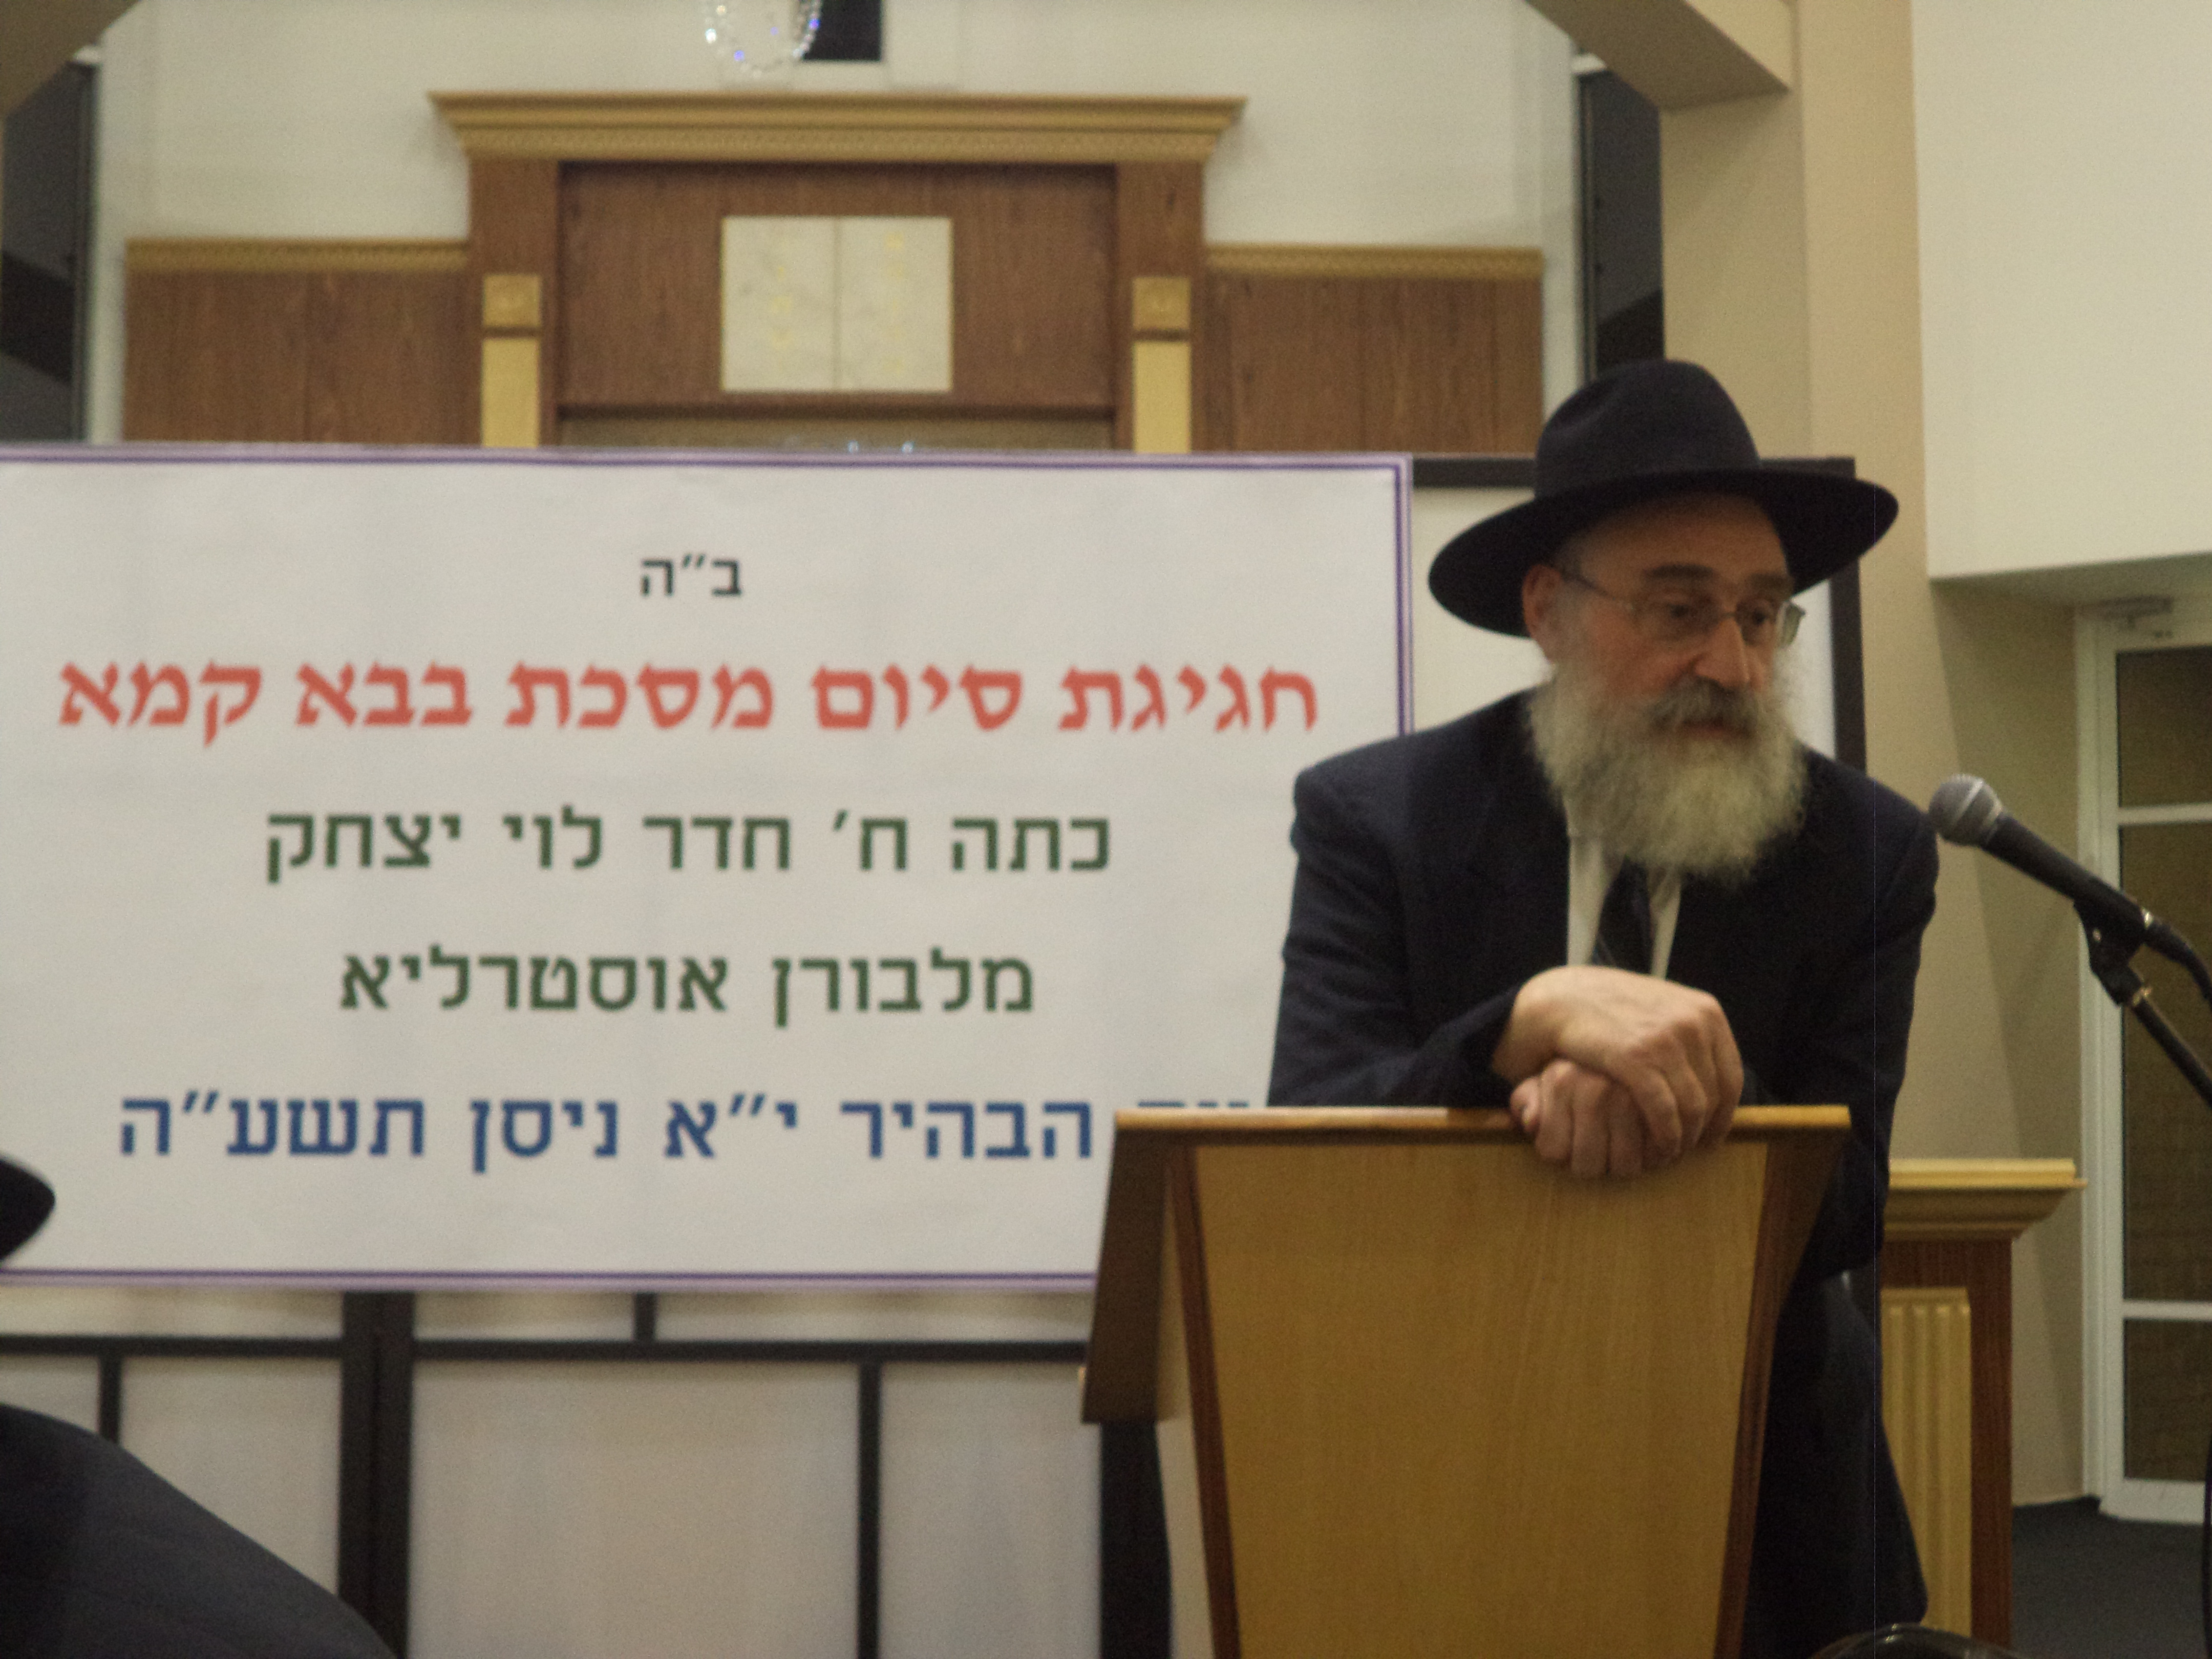 Rabbi Cohen Rosh Yeshivah YG